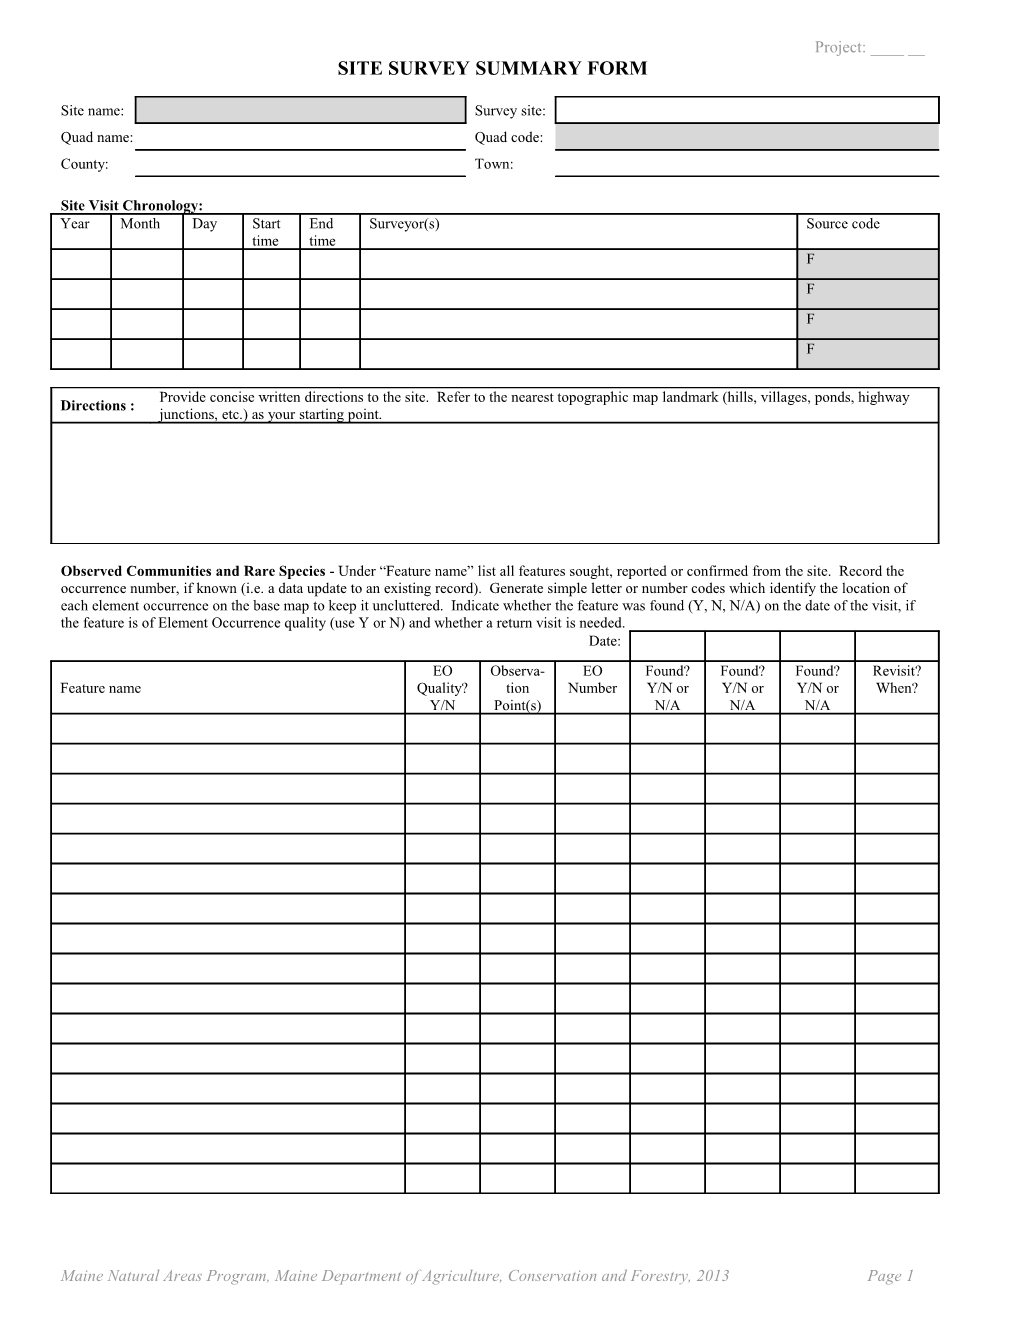 Special Plant Survey Form